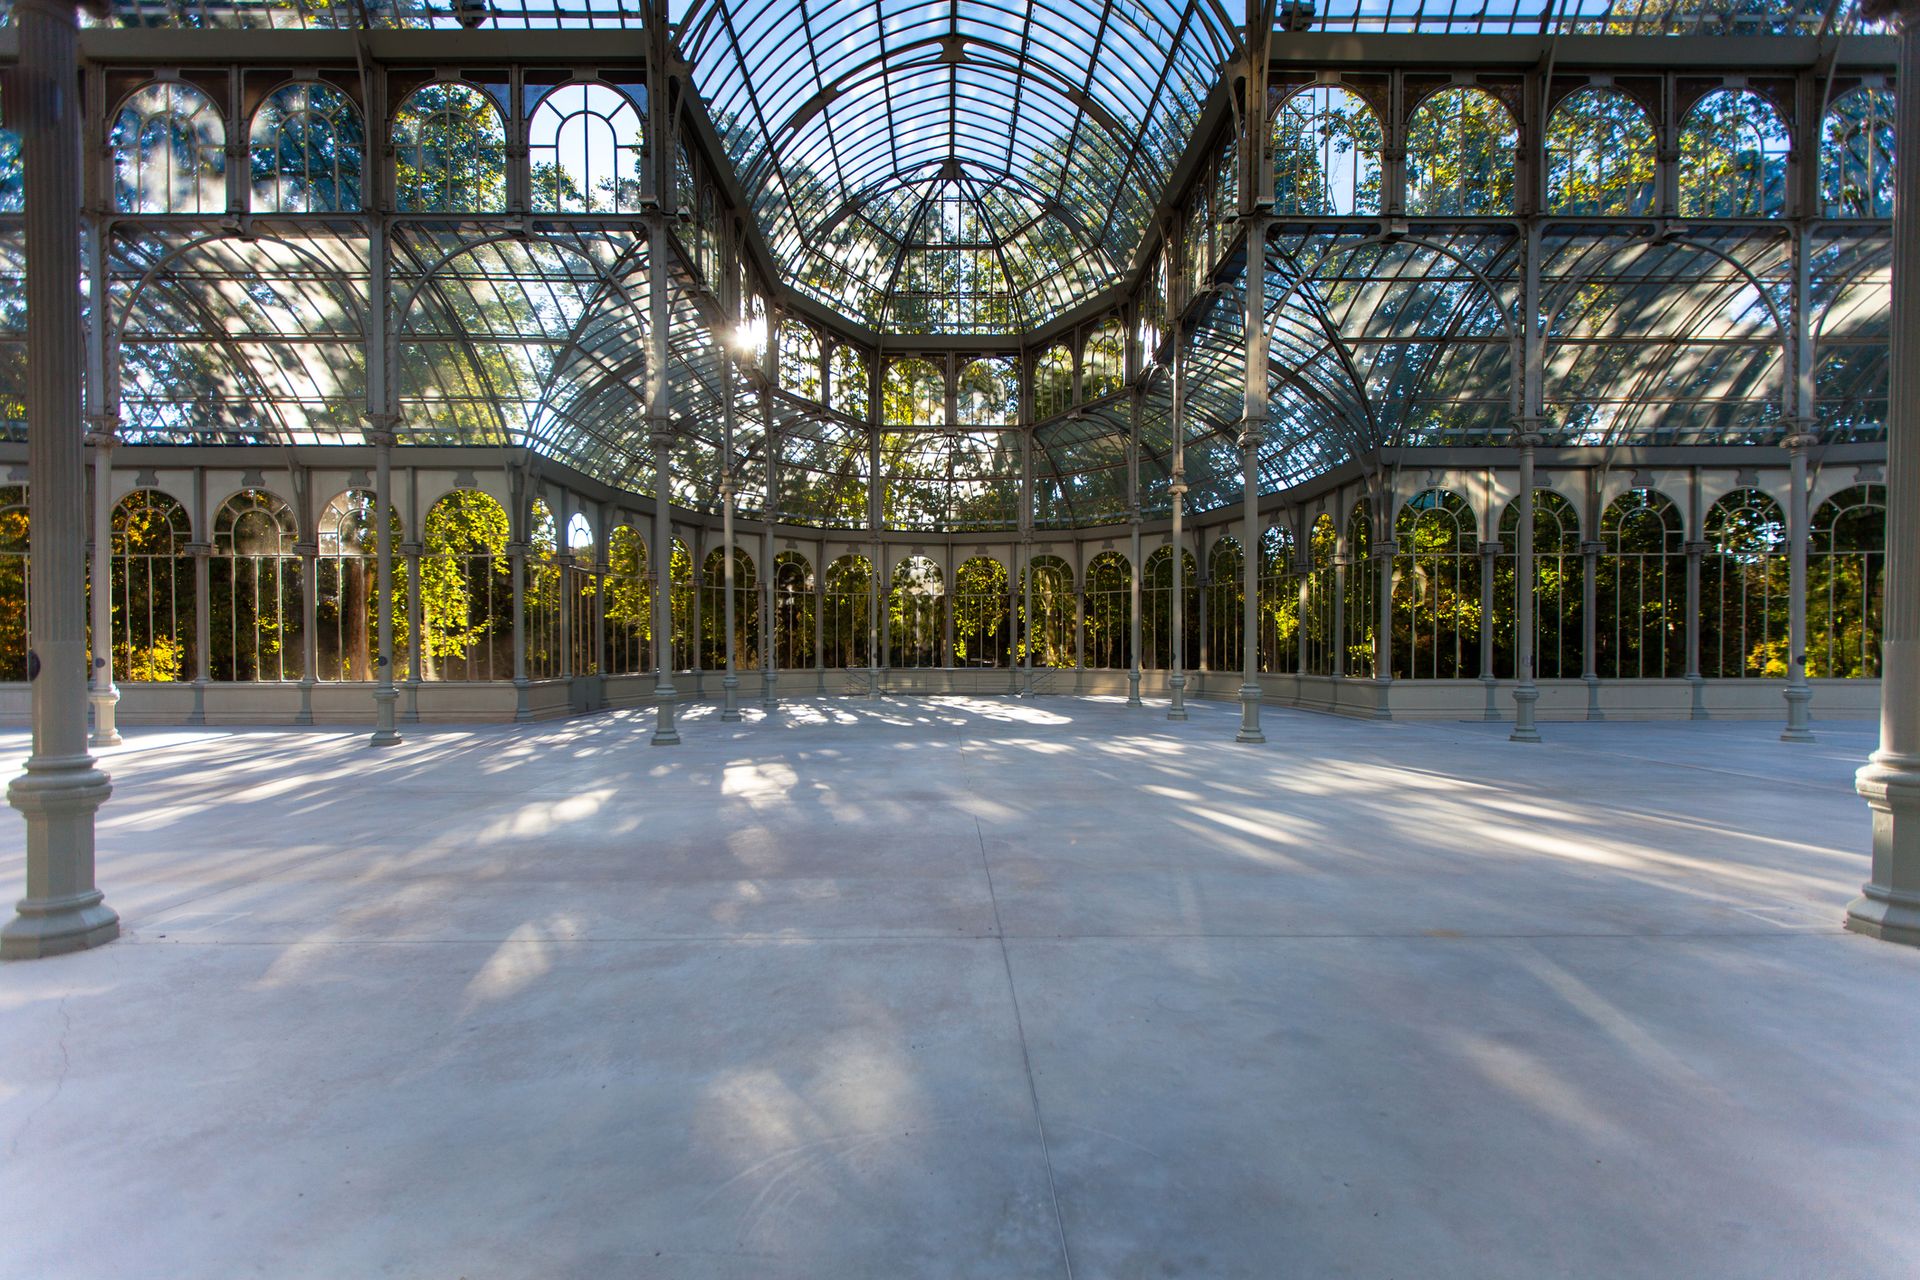 Le palais de cristal dans le parc du Retiro, Madrid - Espagne ©iStock